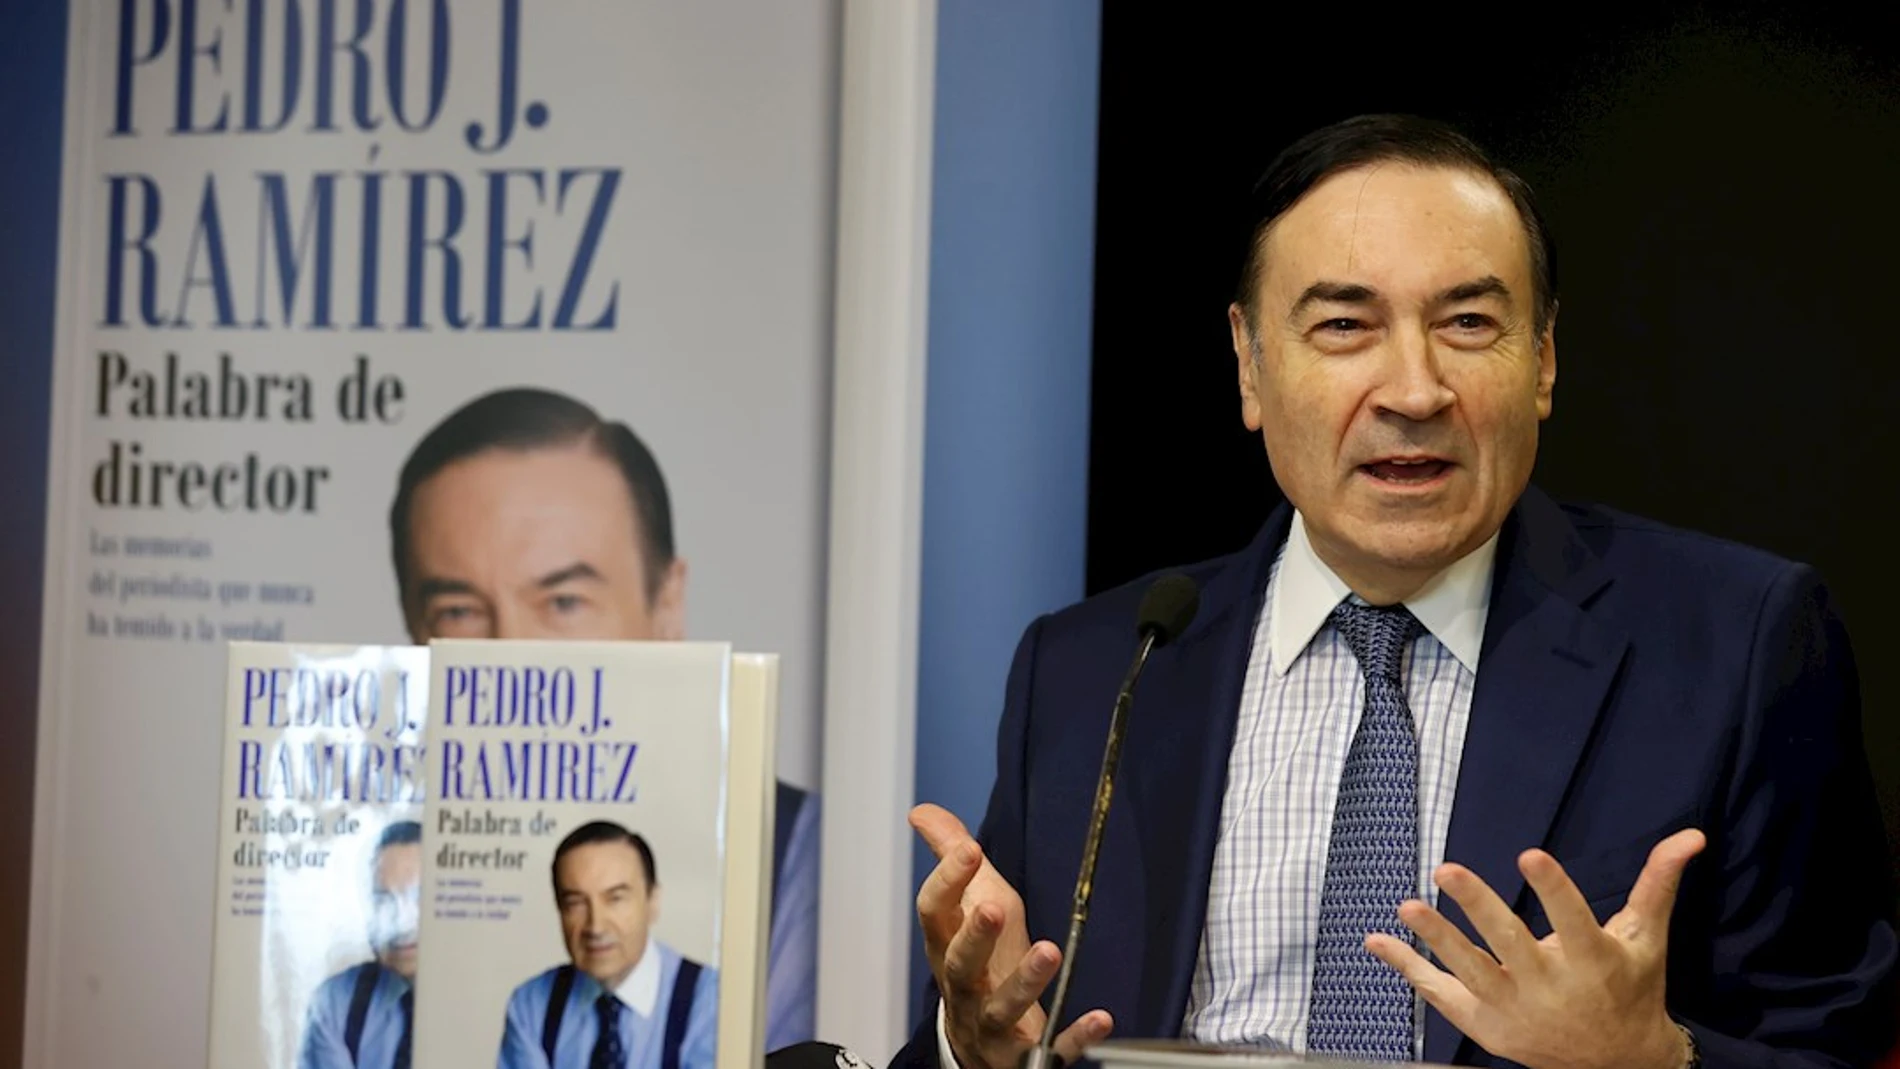 Pedro J. Ramírez durante la presentación de su libro